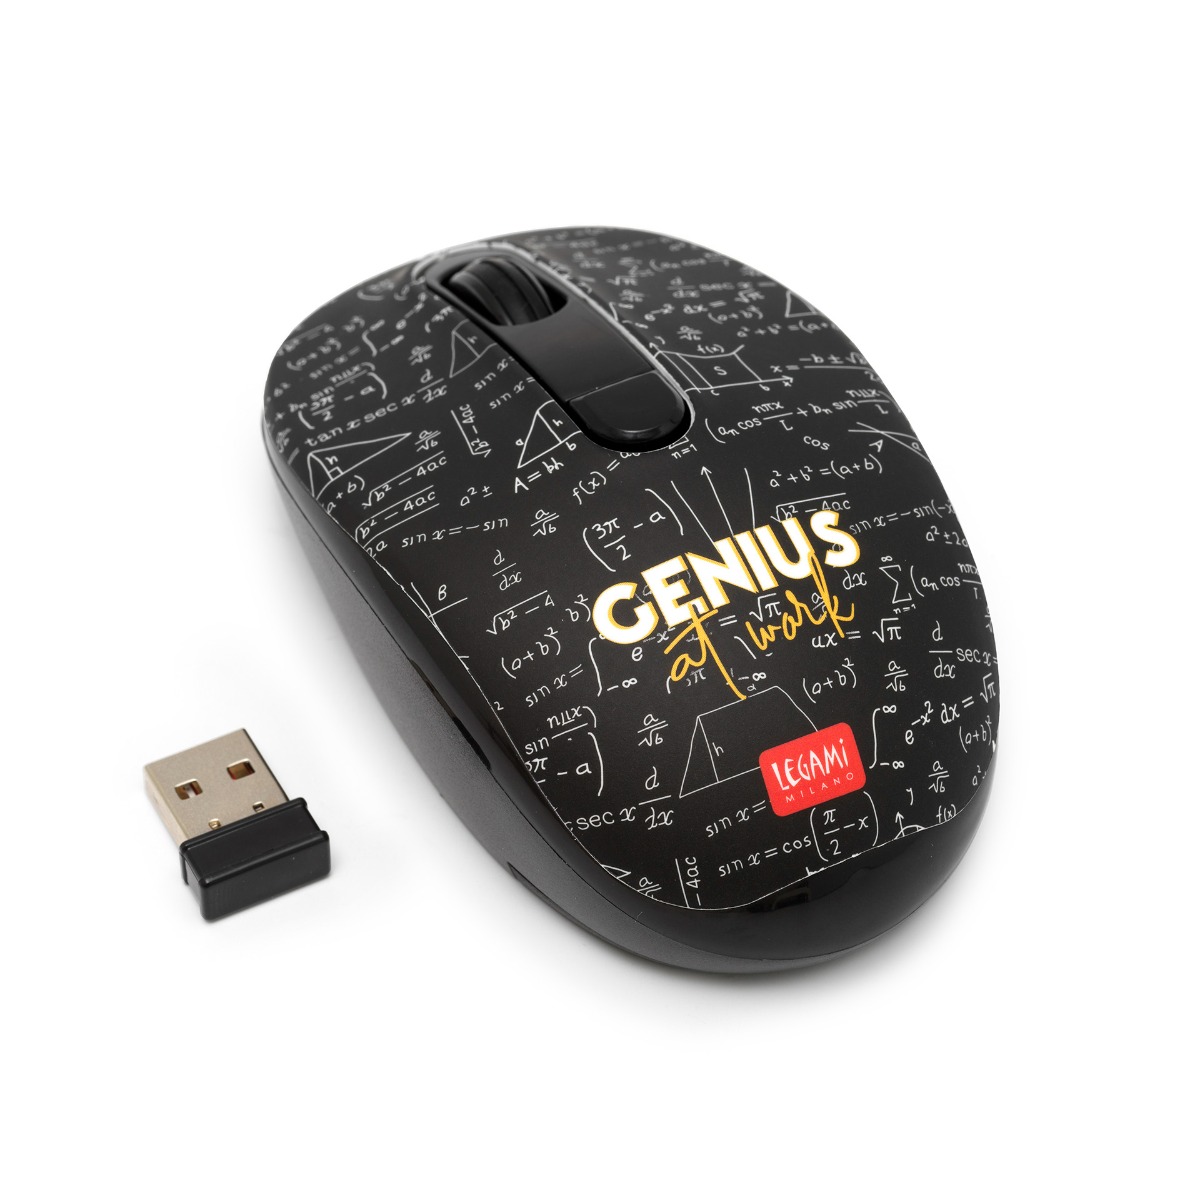 Legami Bezdrôtová myš Genius s USB prijímačom